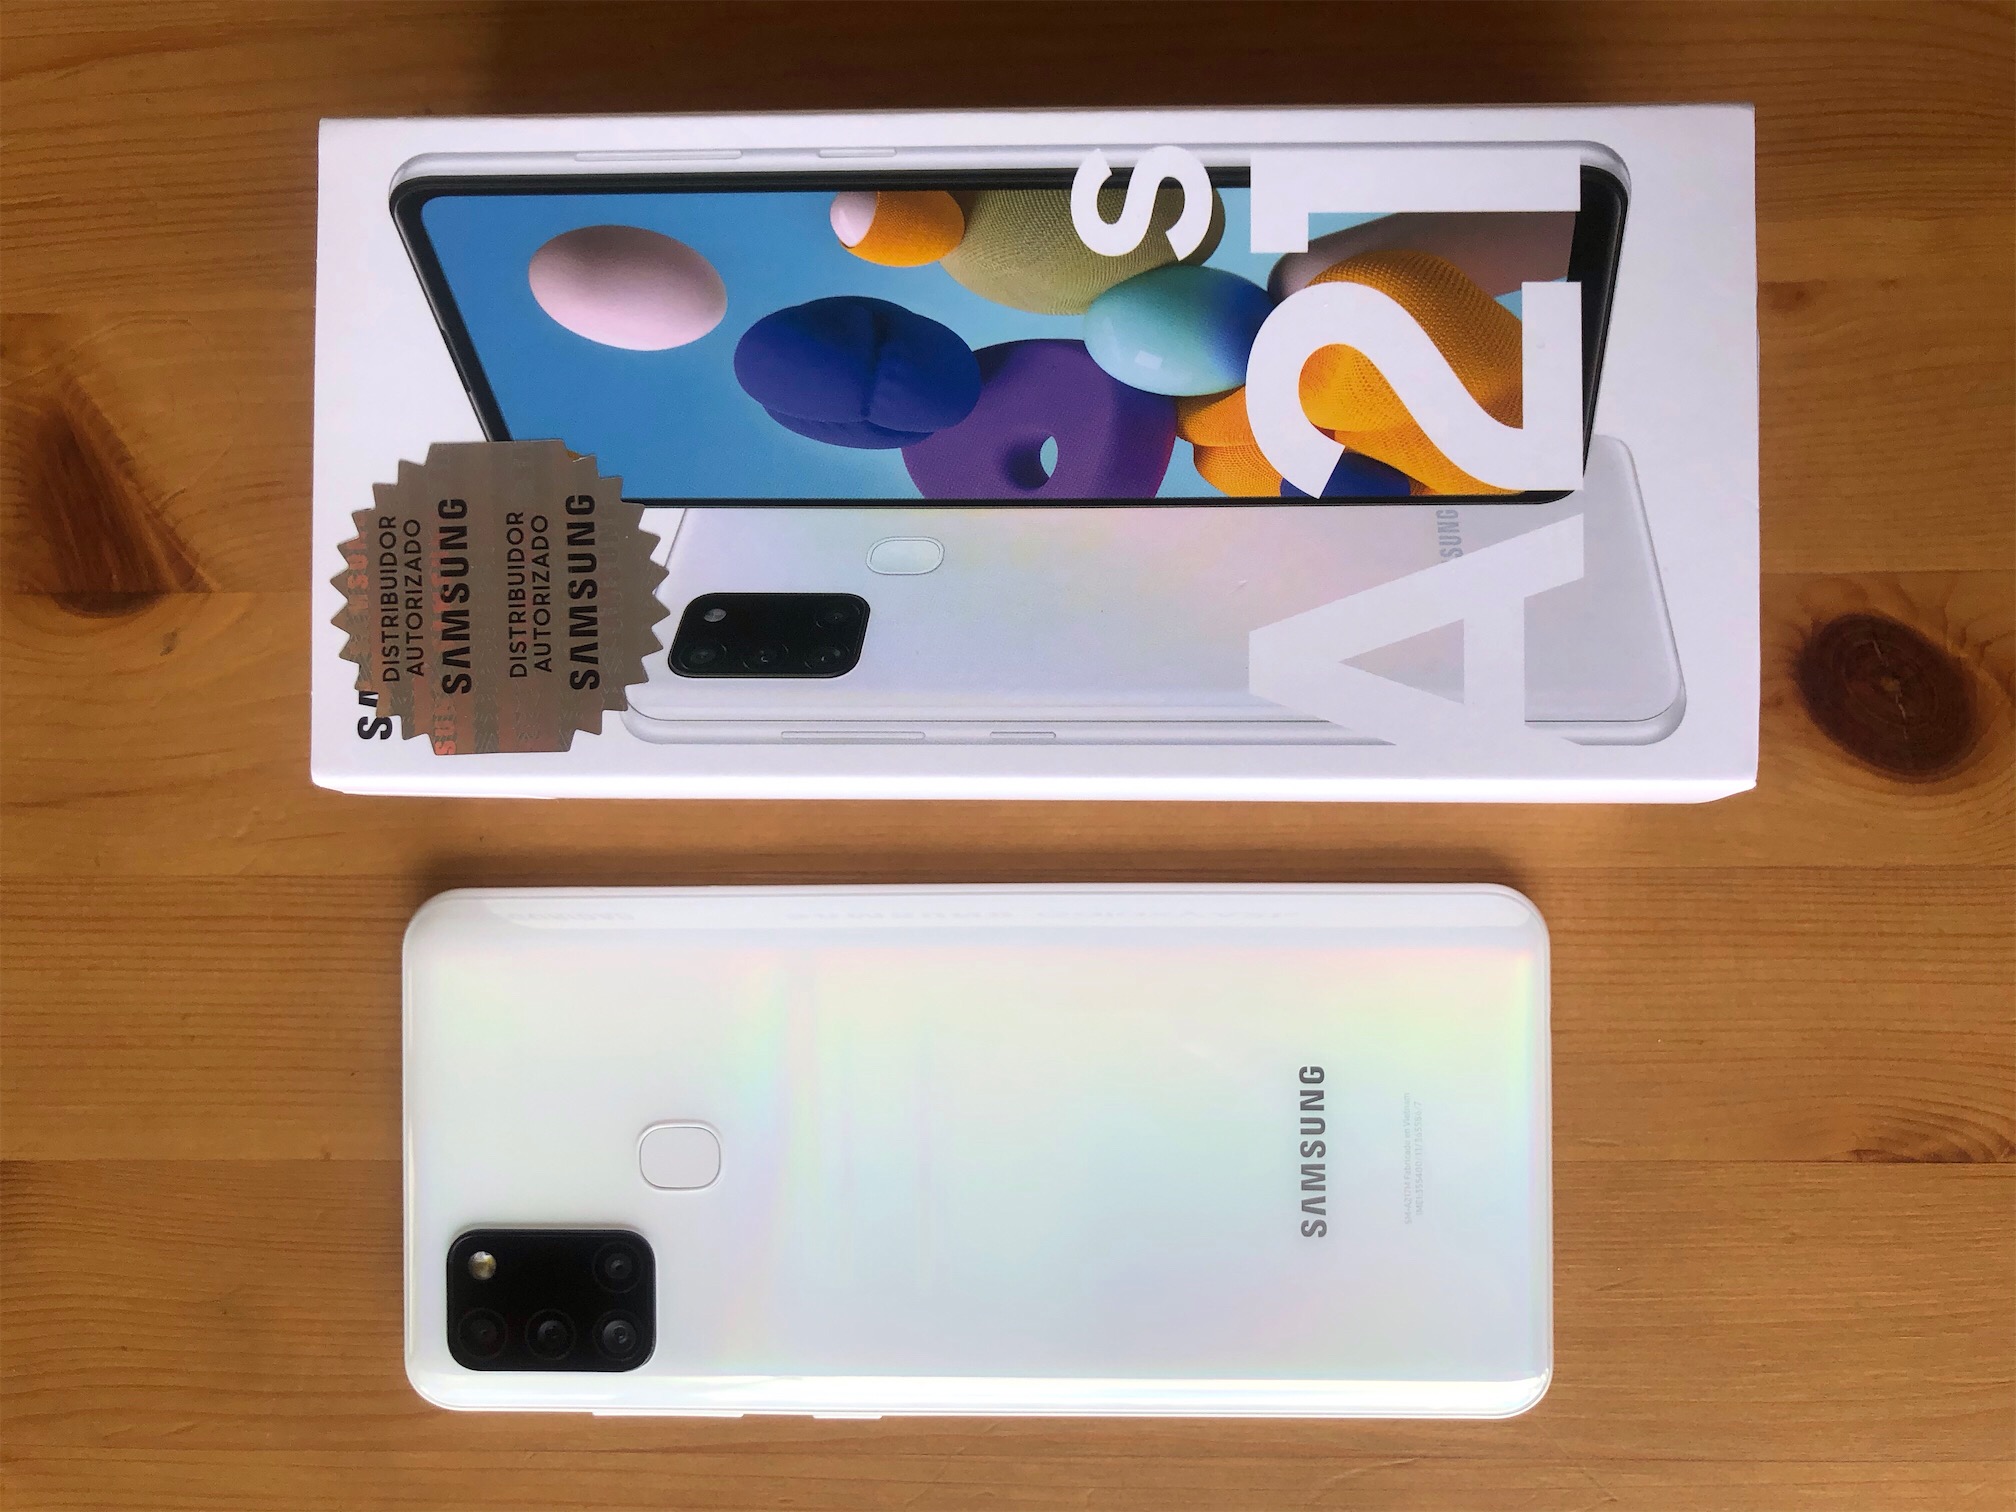 Samsung A21s blanco de venta. Totalmente nuevo 0km con su caja y accesorios orig